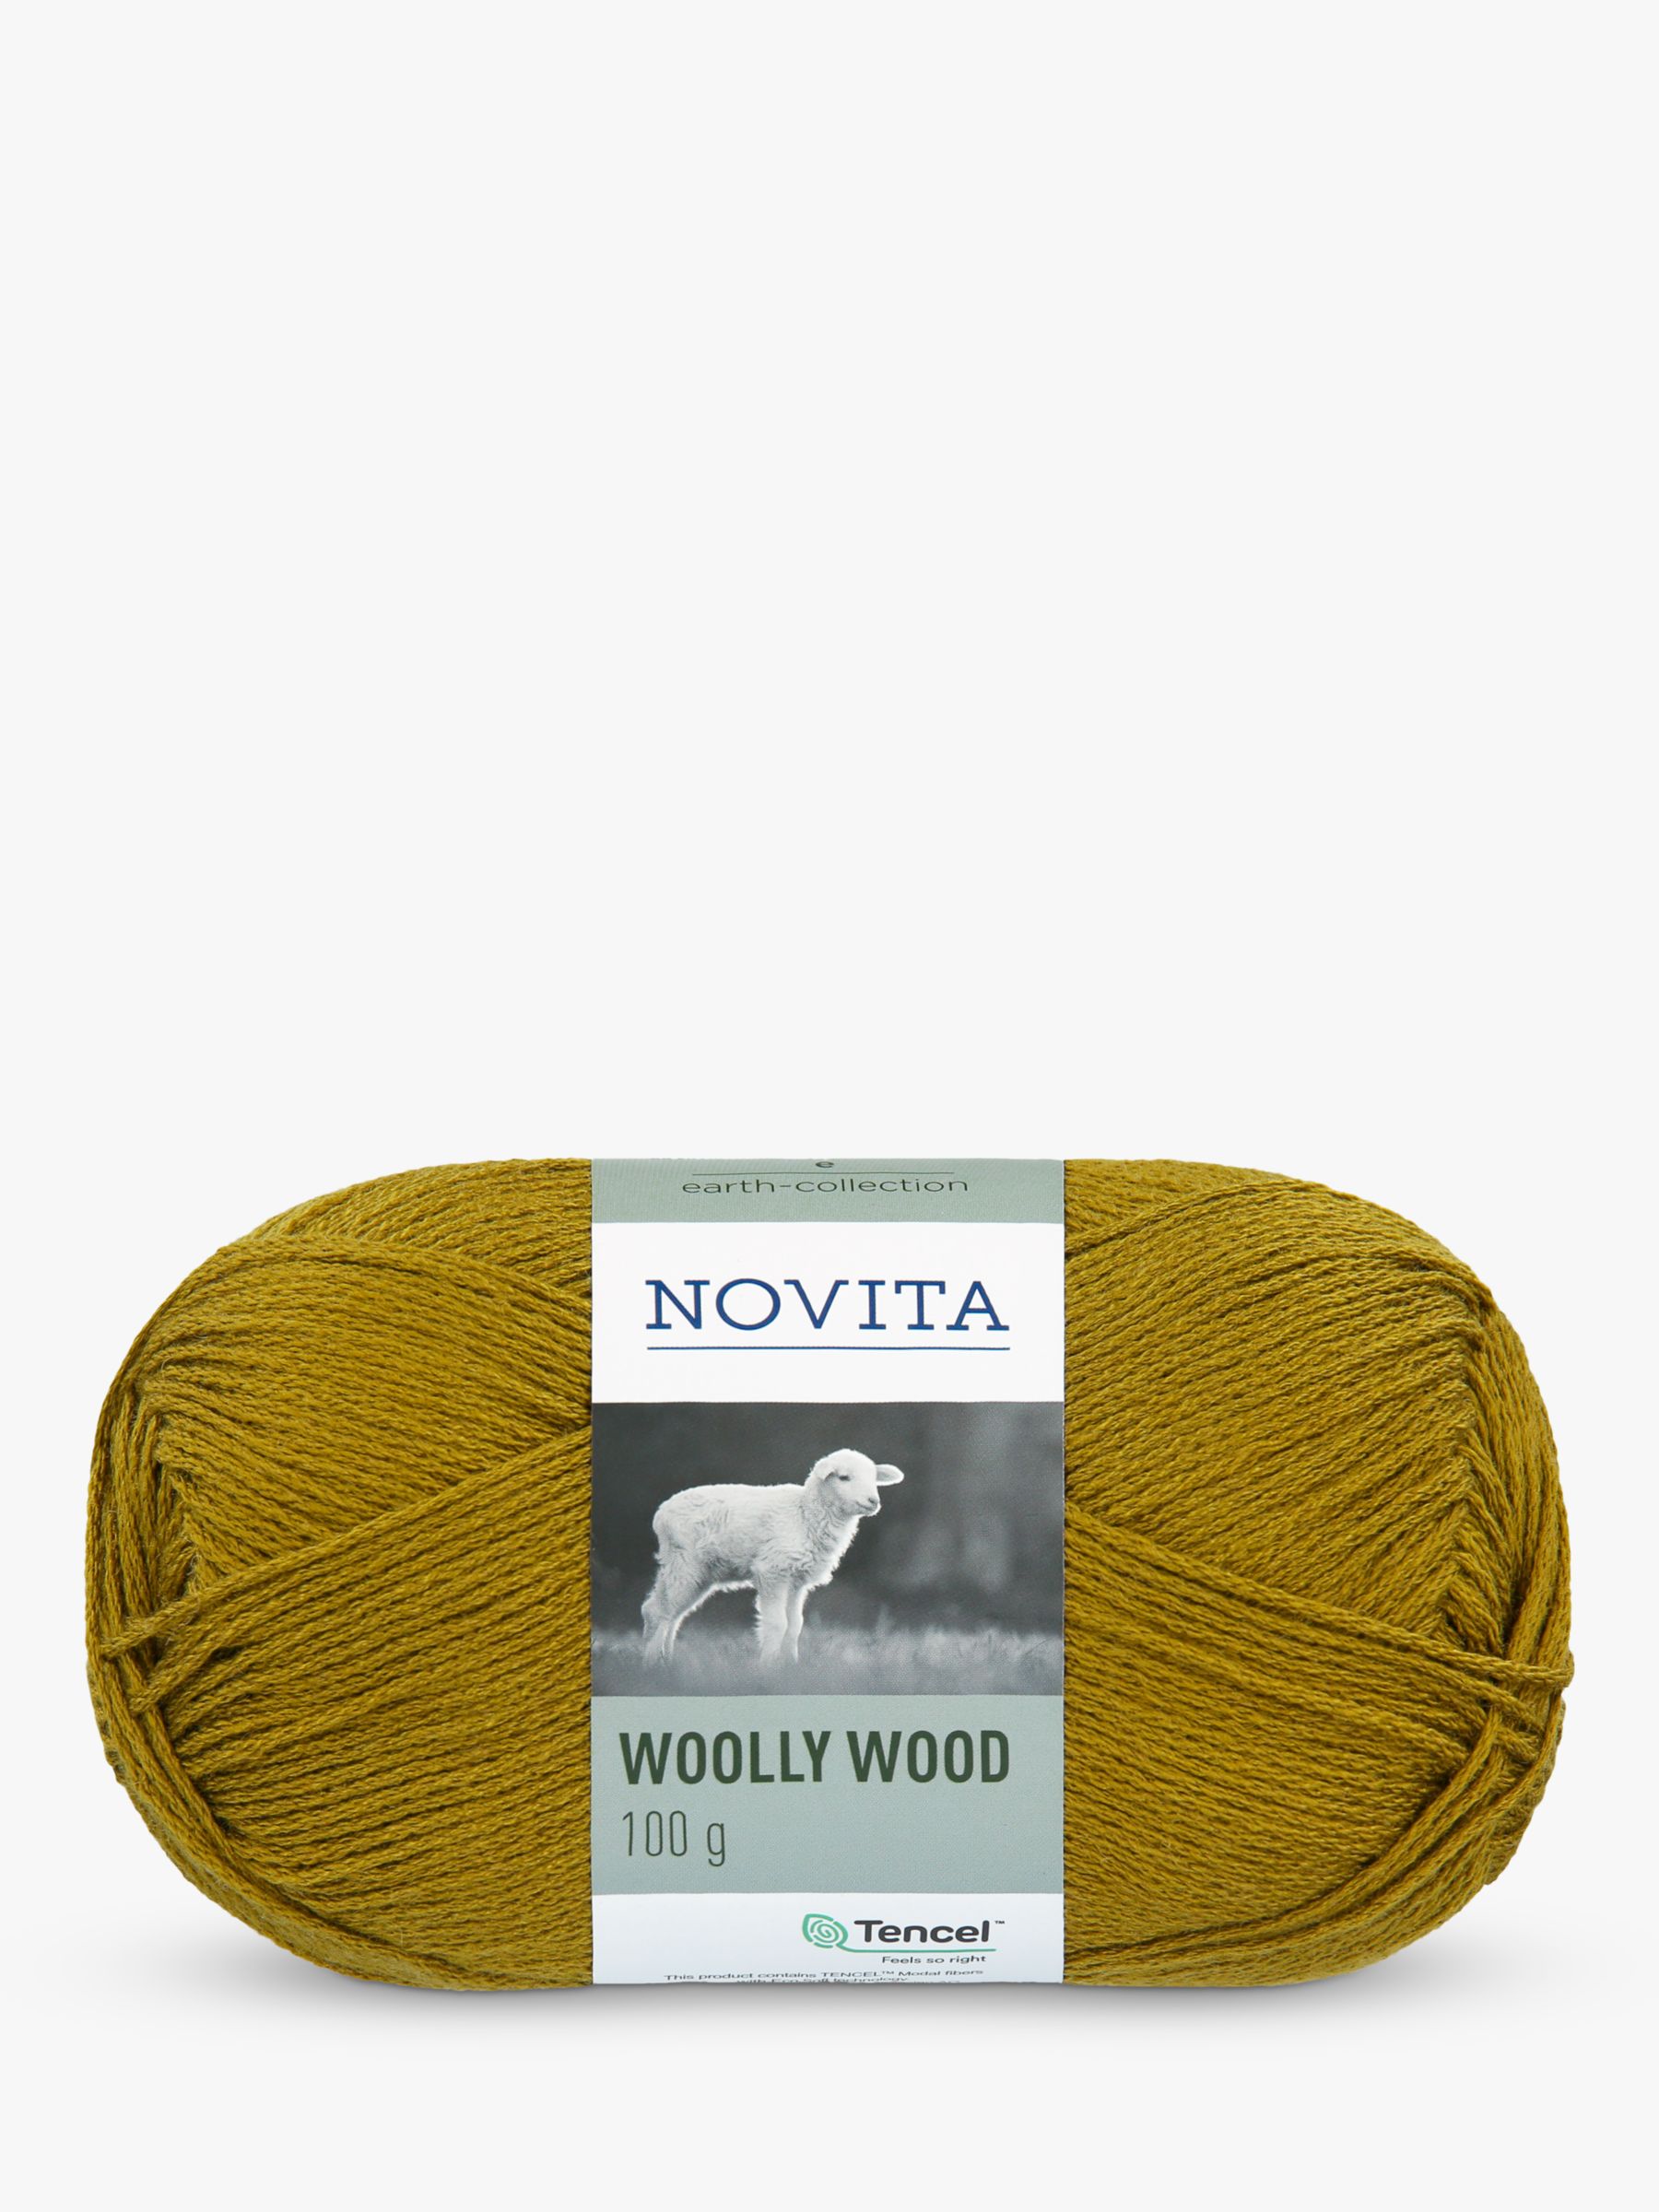 Novita Wooly Wood DK Yarn, 100g